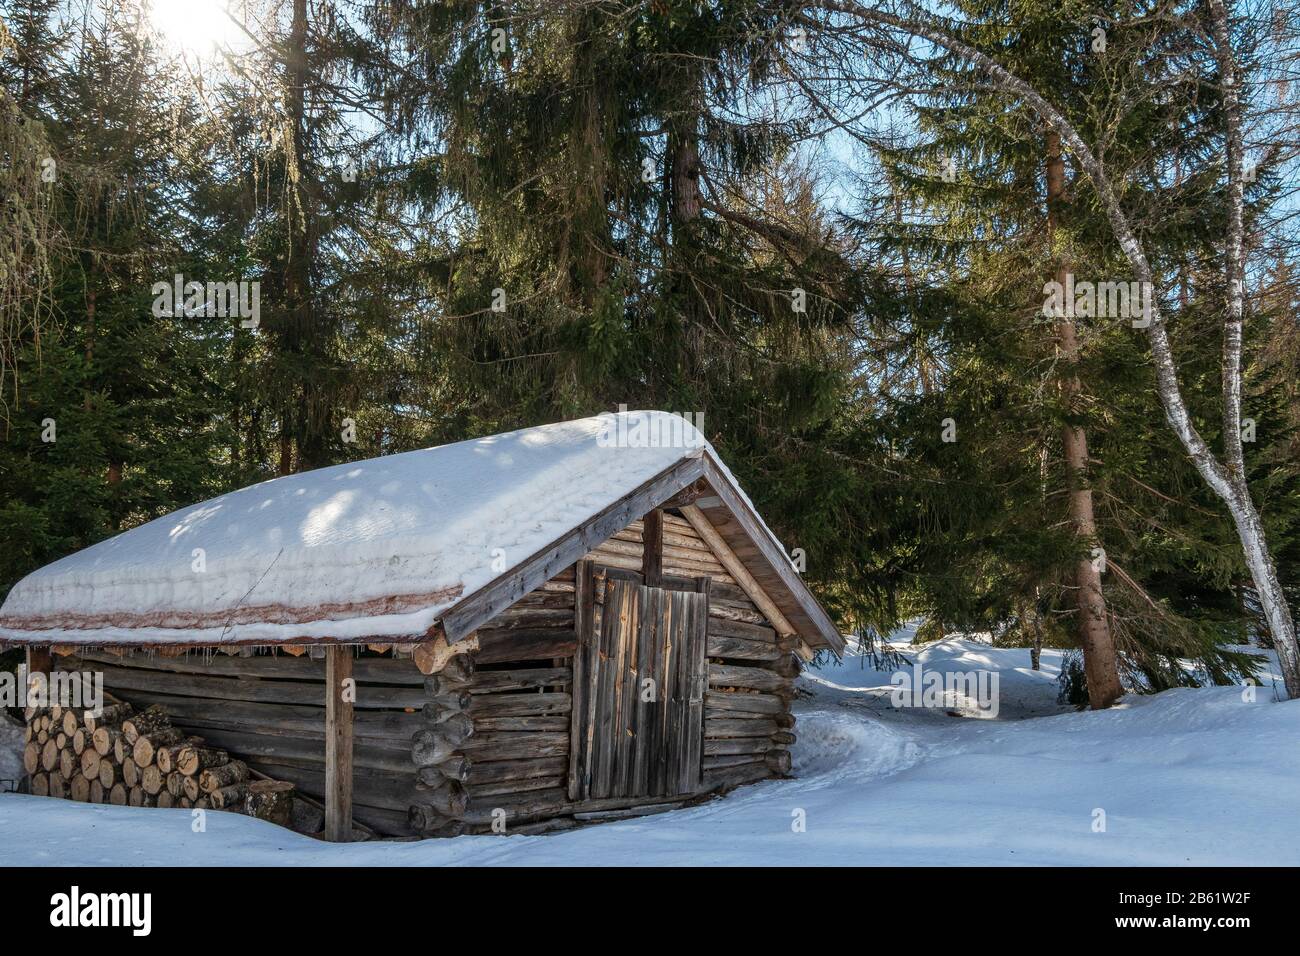 Chalet en bois avec troncs d'arbres coupés. Saison d'hiver, neige. Forêt de Seefeld dans le Tyrol. Autriche. Europe. Banque D'Images